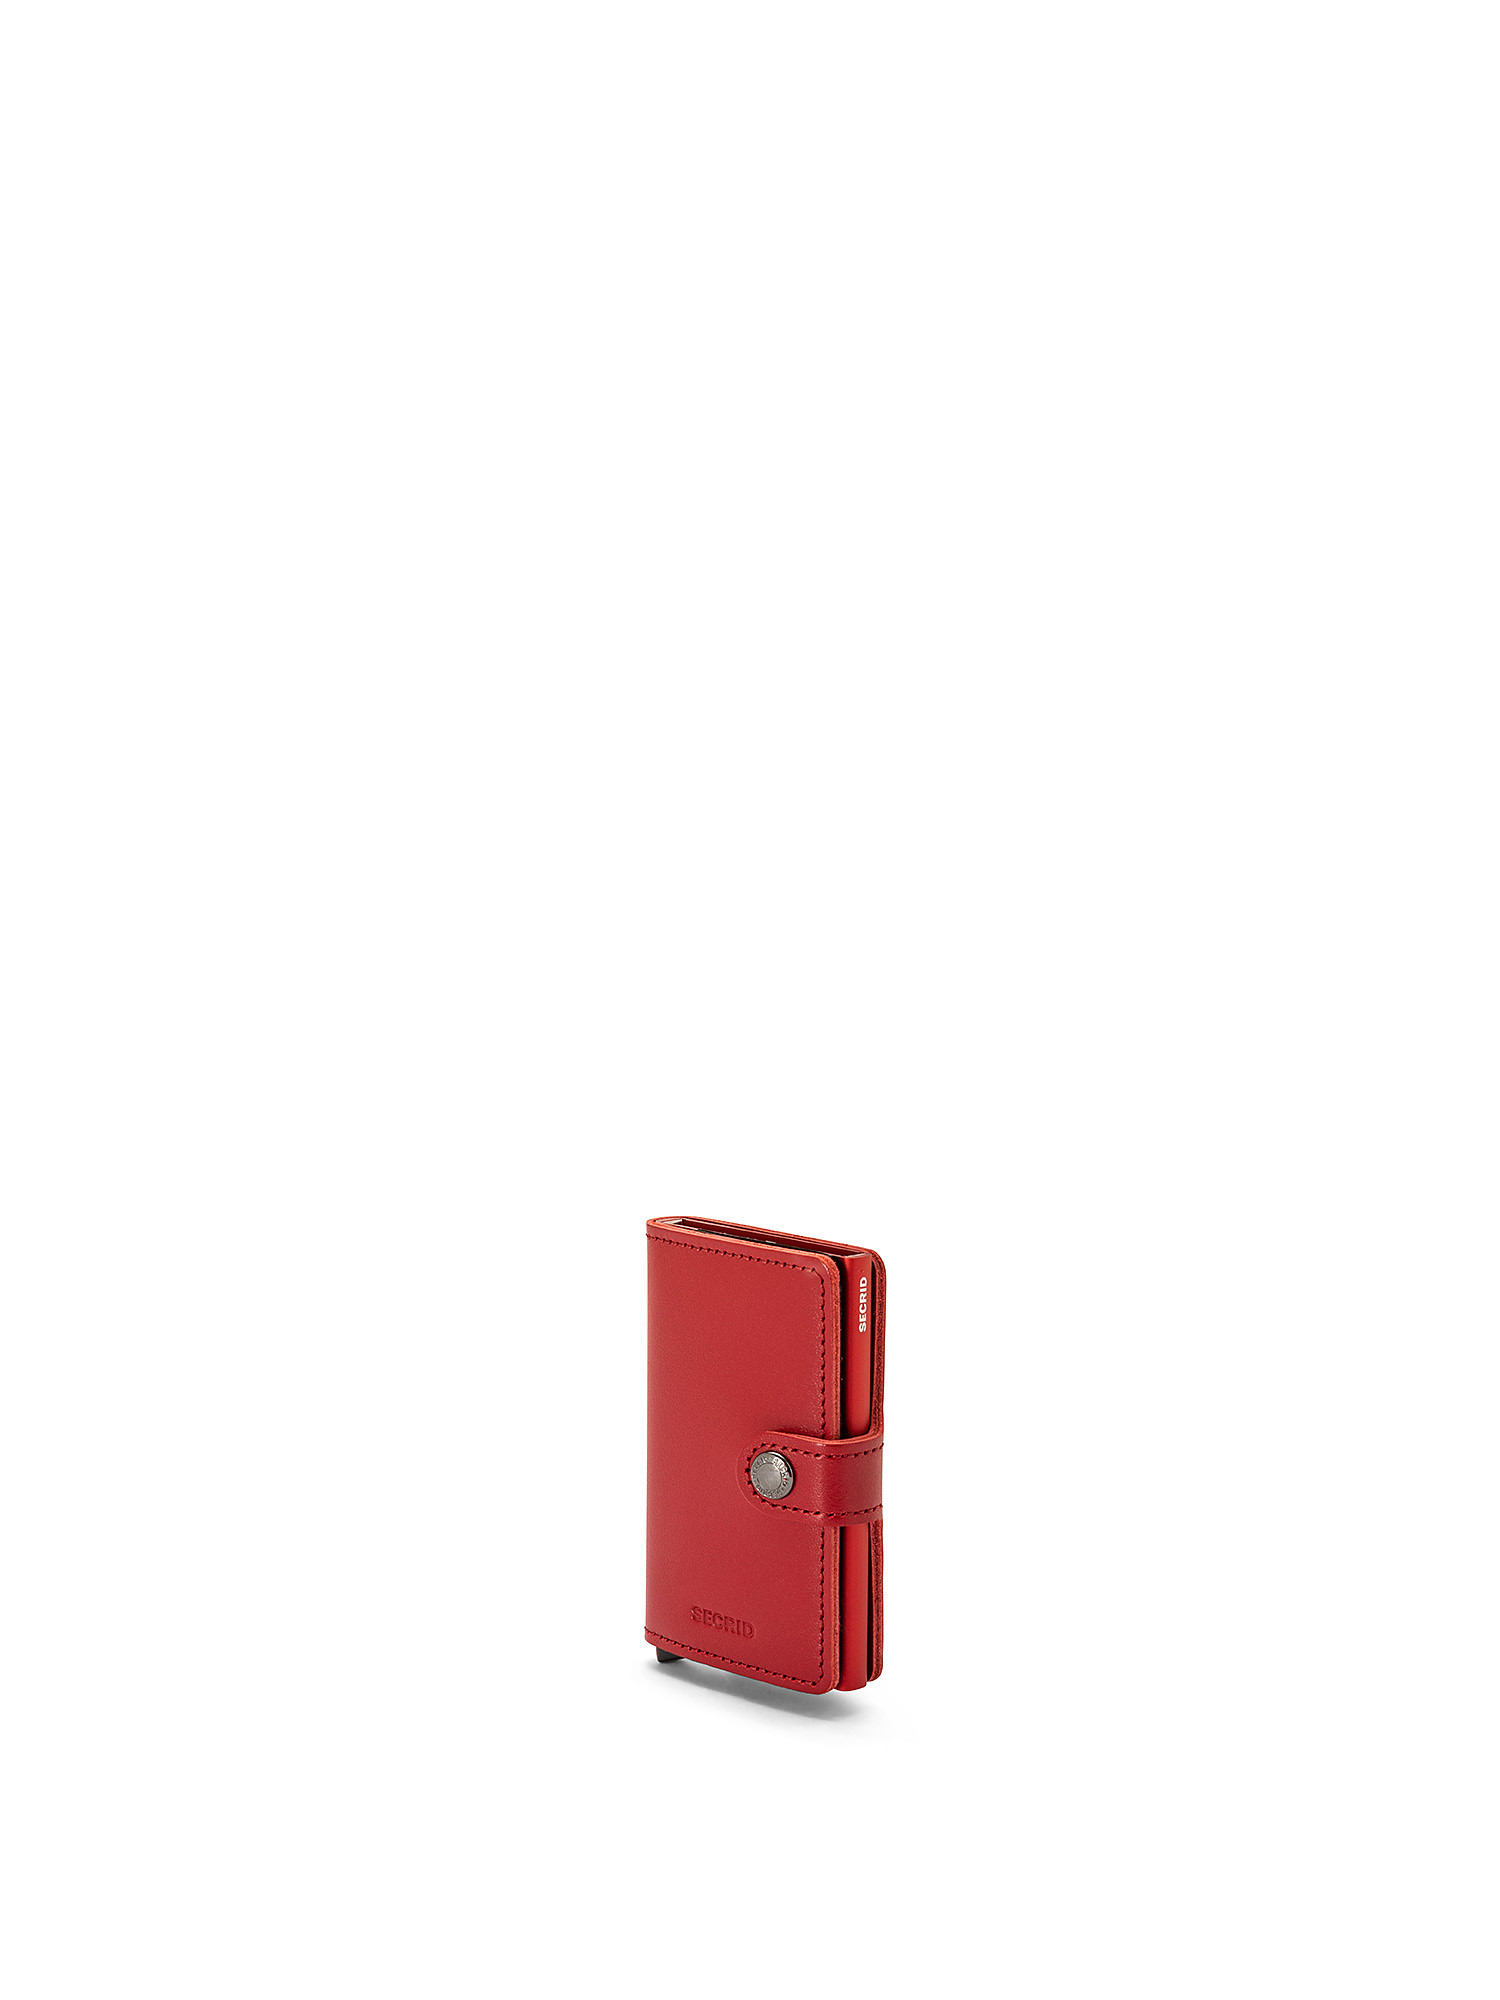 Portafoglio Miniwallet Original, Rosso, large